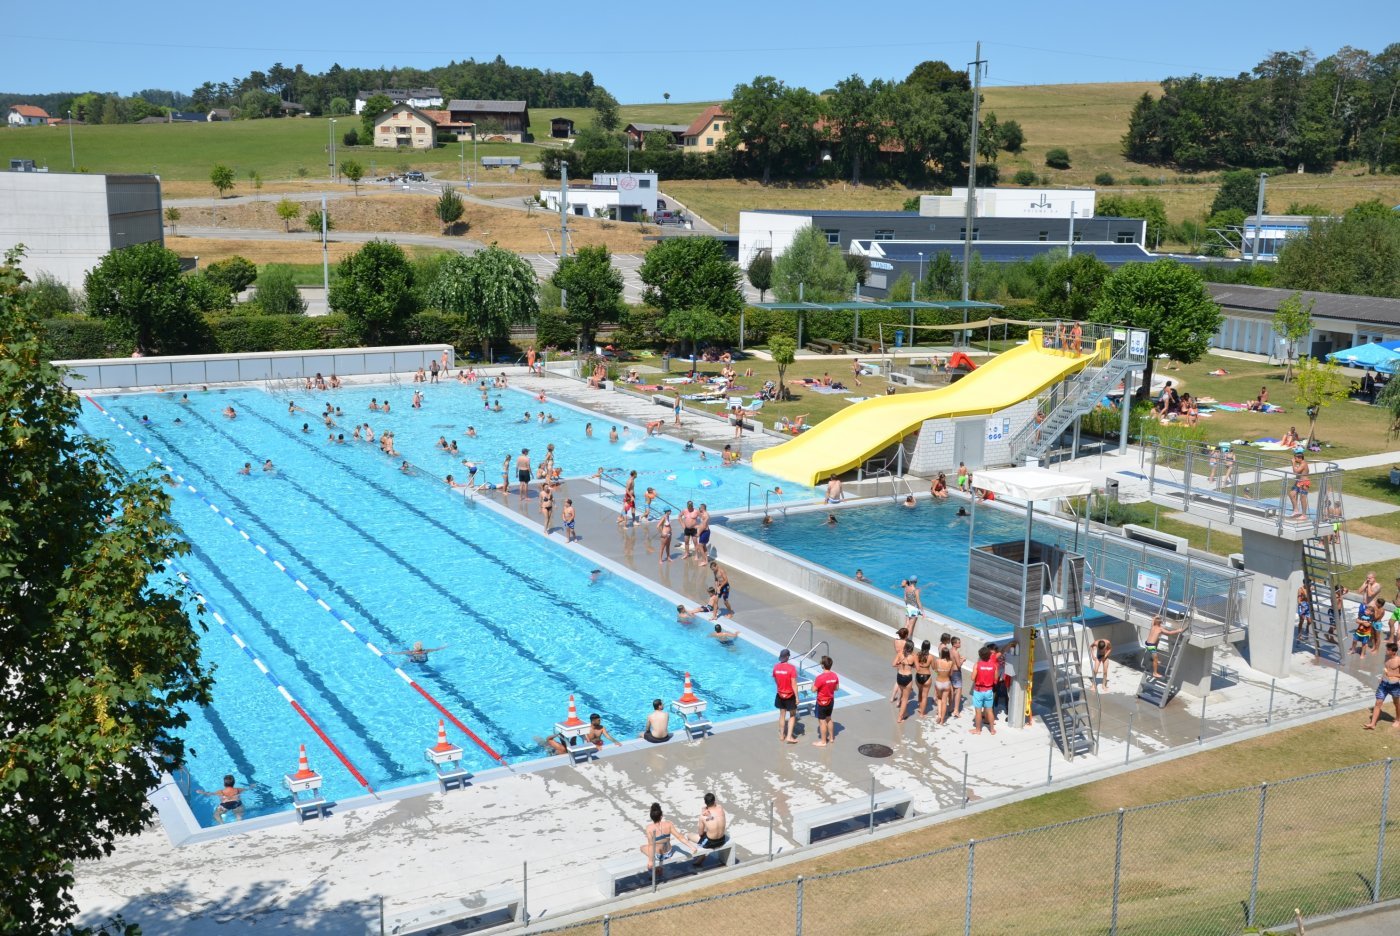 La piscine en plein air de Porrentruy n'accepte plus que des résidents suisses depuis le 30 juillet 2020 et jusqu'à mi-septembre, fin de la saison.